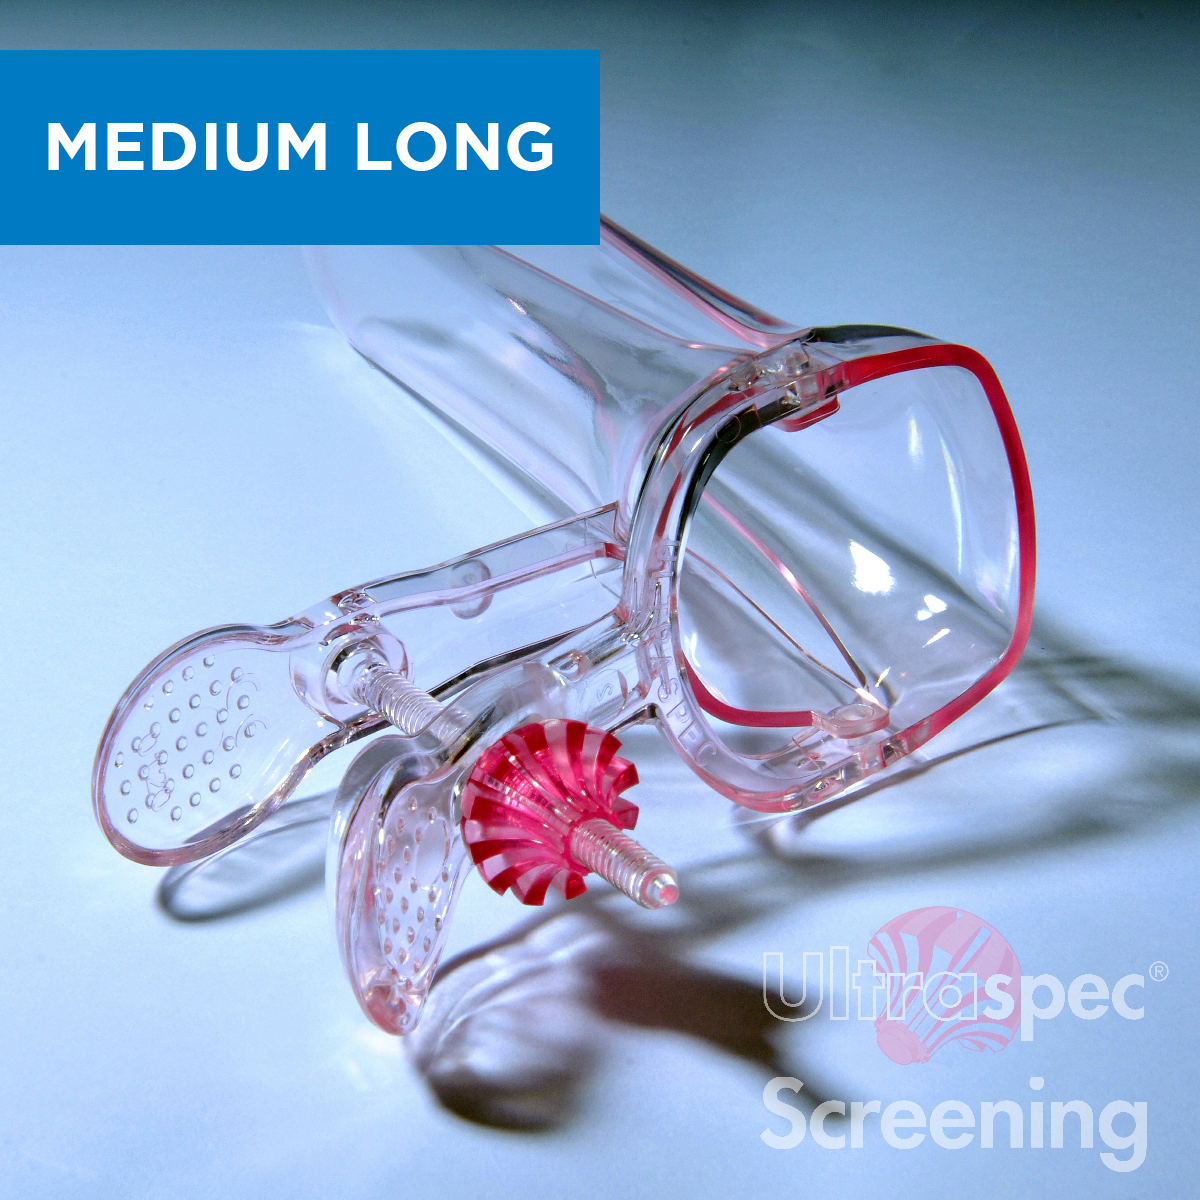 Ultraspec Screening Medium Long.jpg